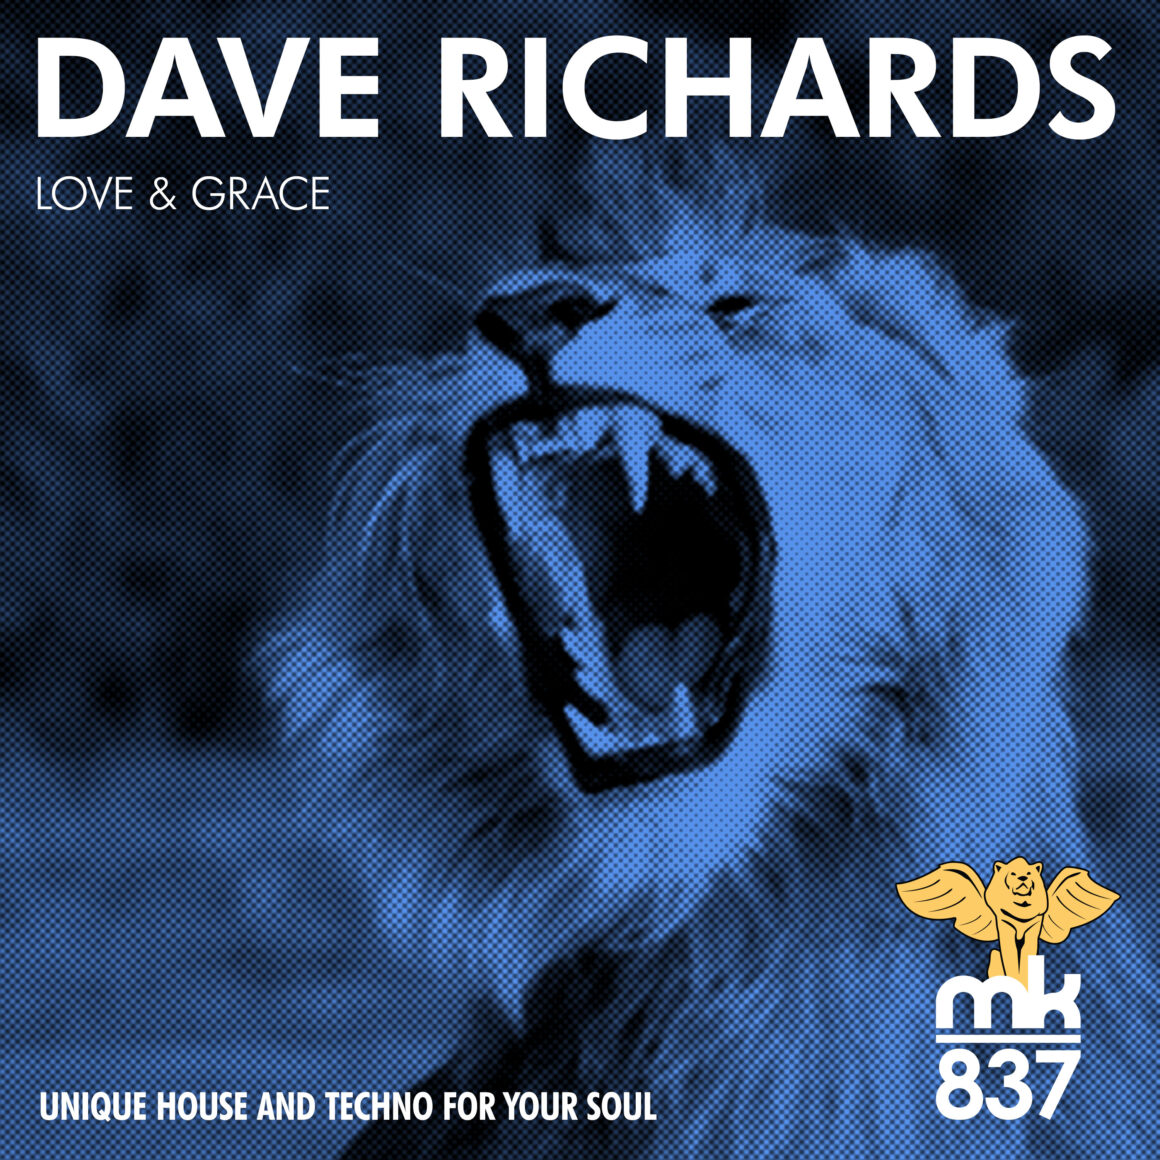 Dave Richards - Love & Grace